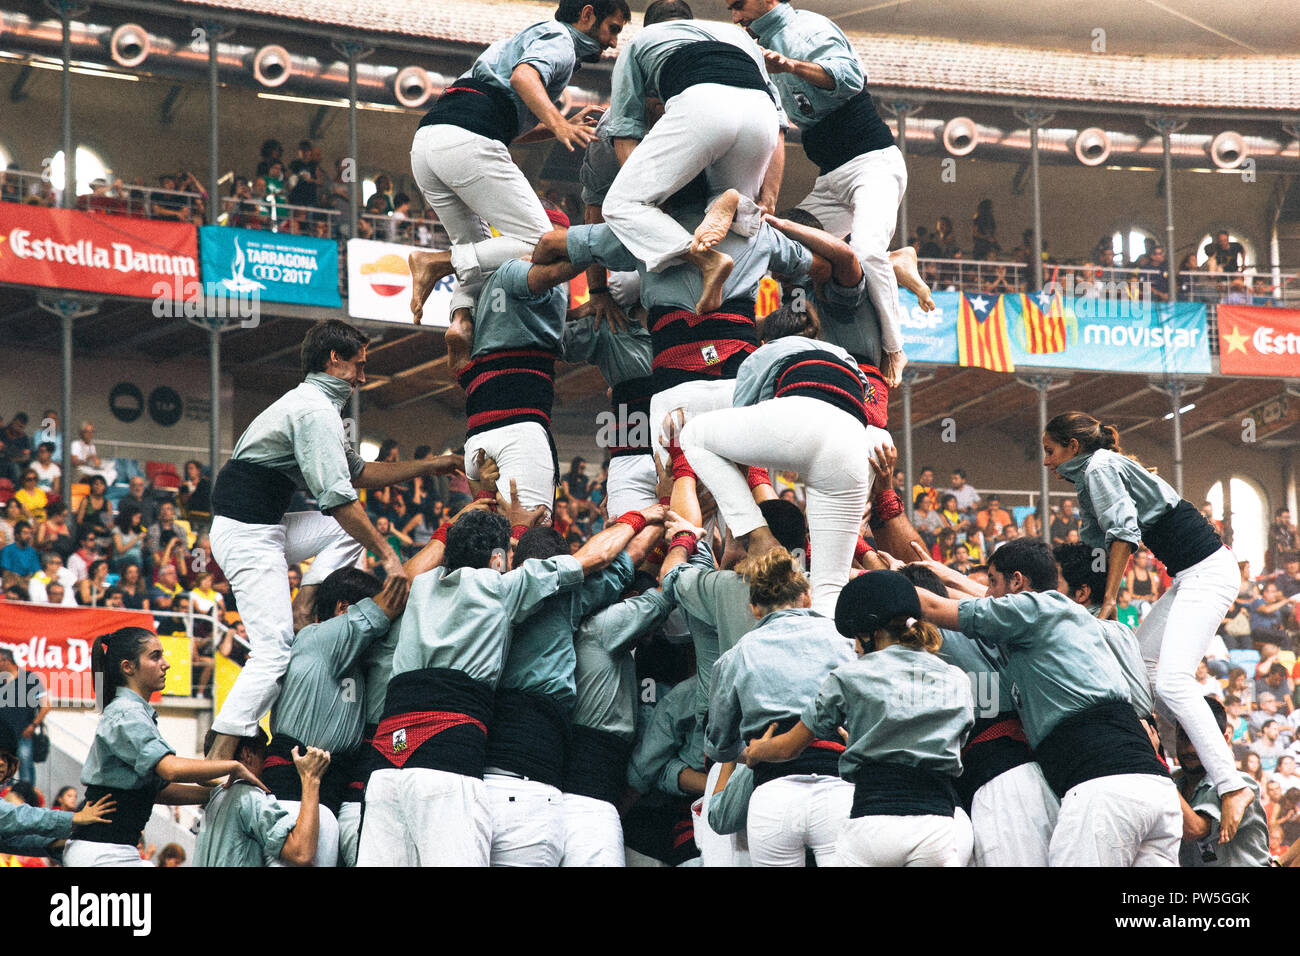 Castellers, Tour humain traditionnel, concurs de Castells, Tarragone, Catalogne, Espagne, 2014 Banque D'Images